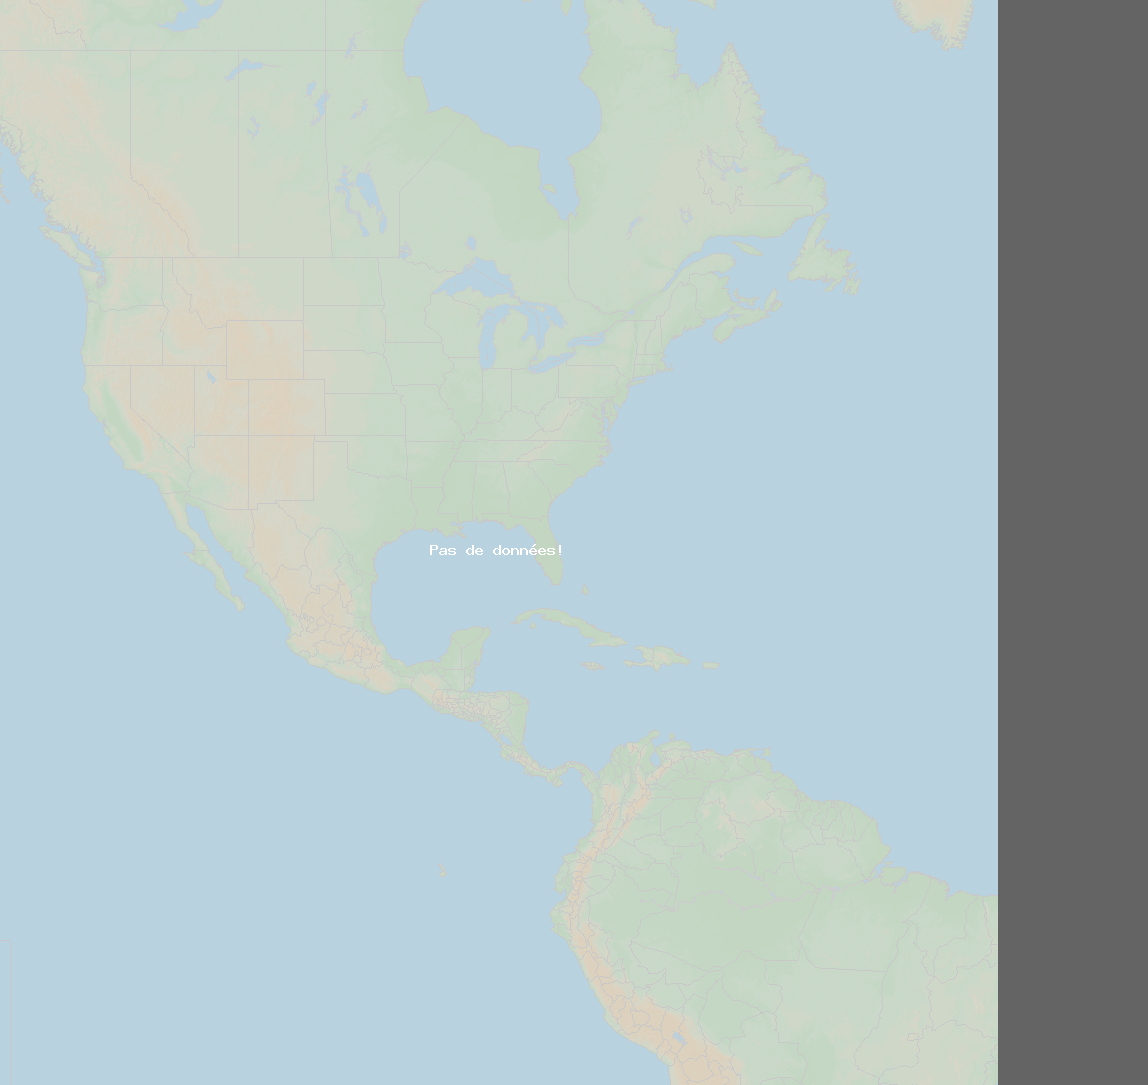 Taux coups de foudre (Station Renaico, IX Region) North America 2019 